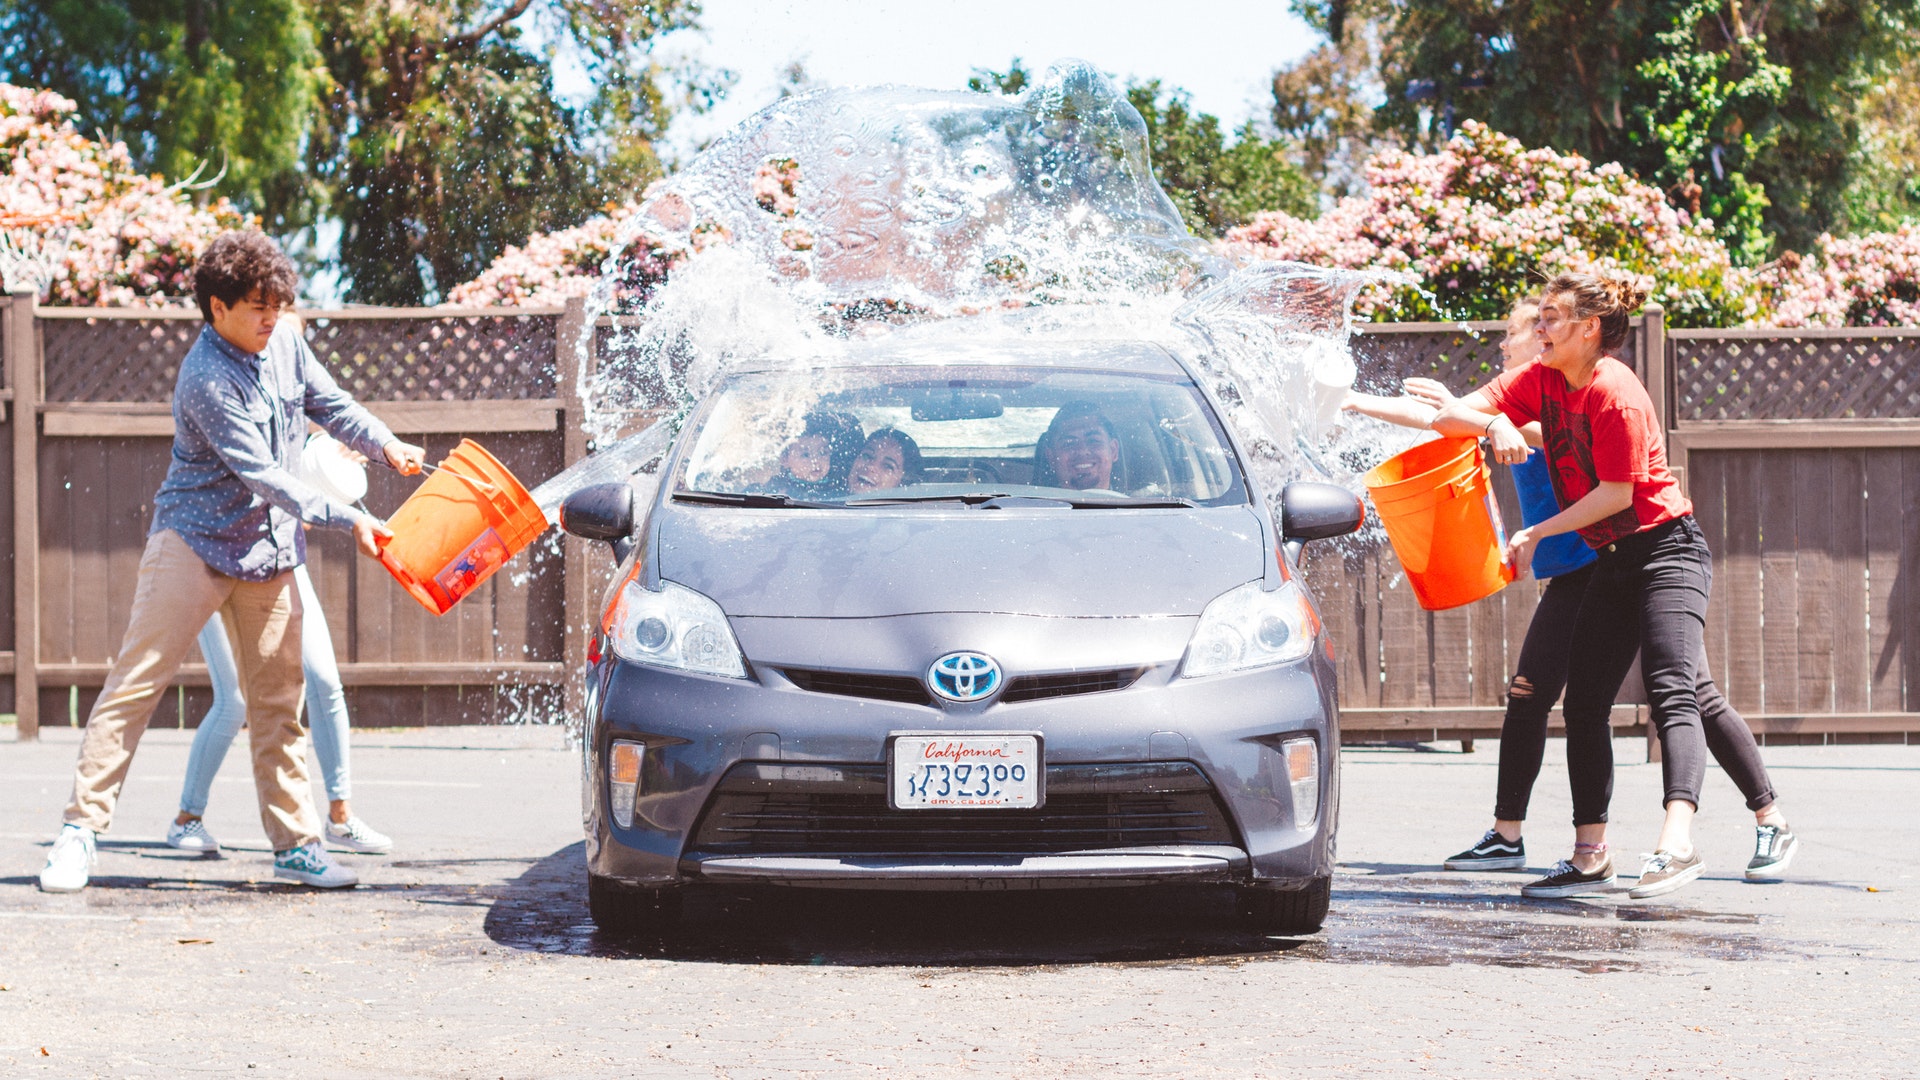 Vemos crianças jogando água em um carro usando baldes; o veículo para que será lavado por elas (imagem ilustrativa). Texto: franquia de produtos de limpeza automotiva.